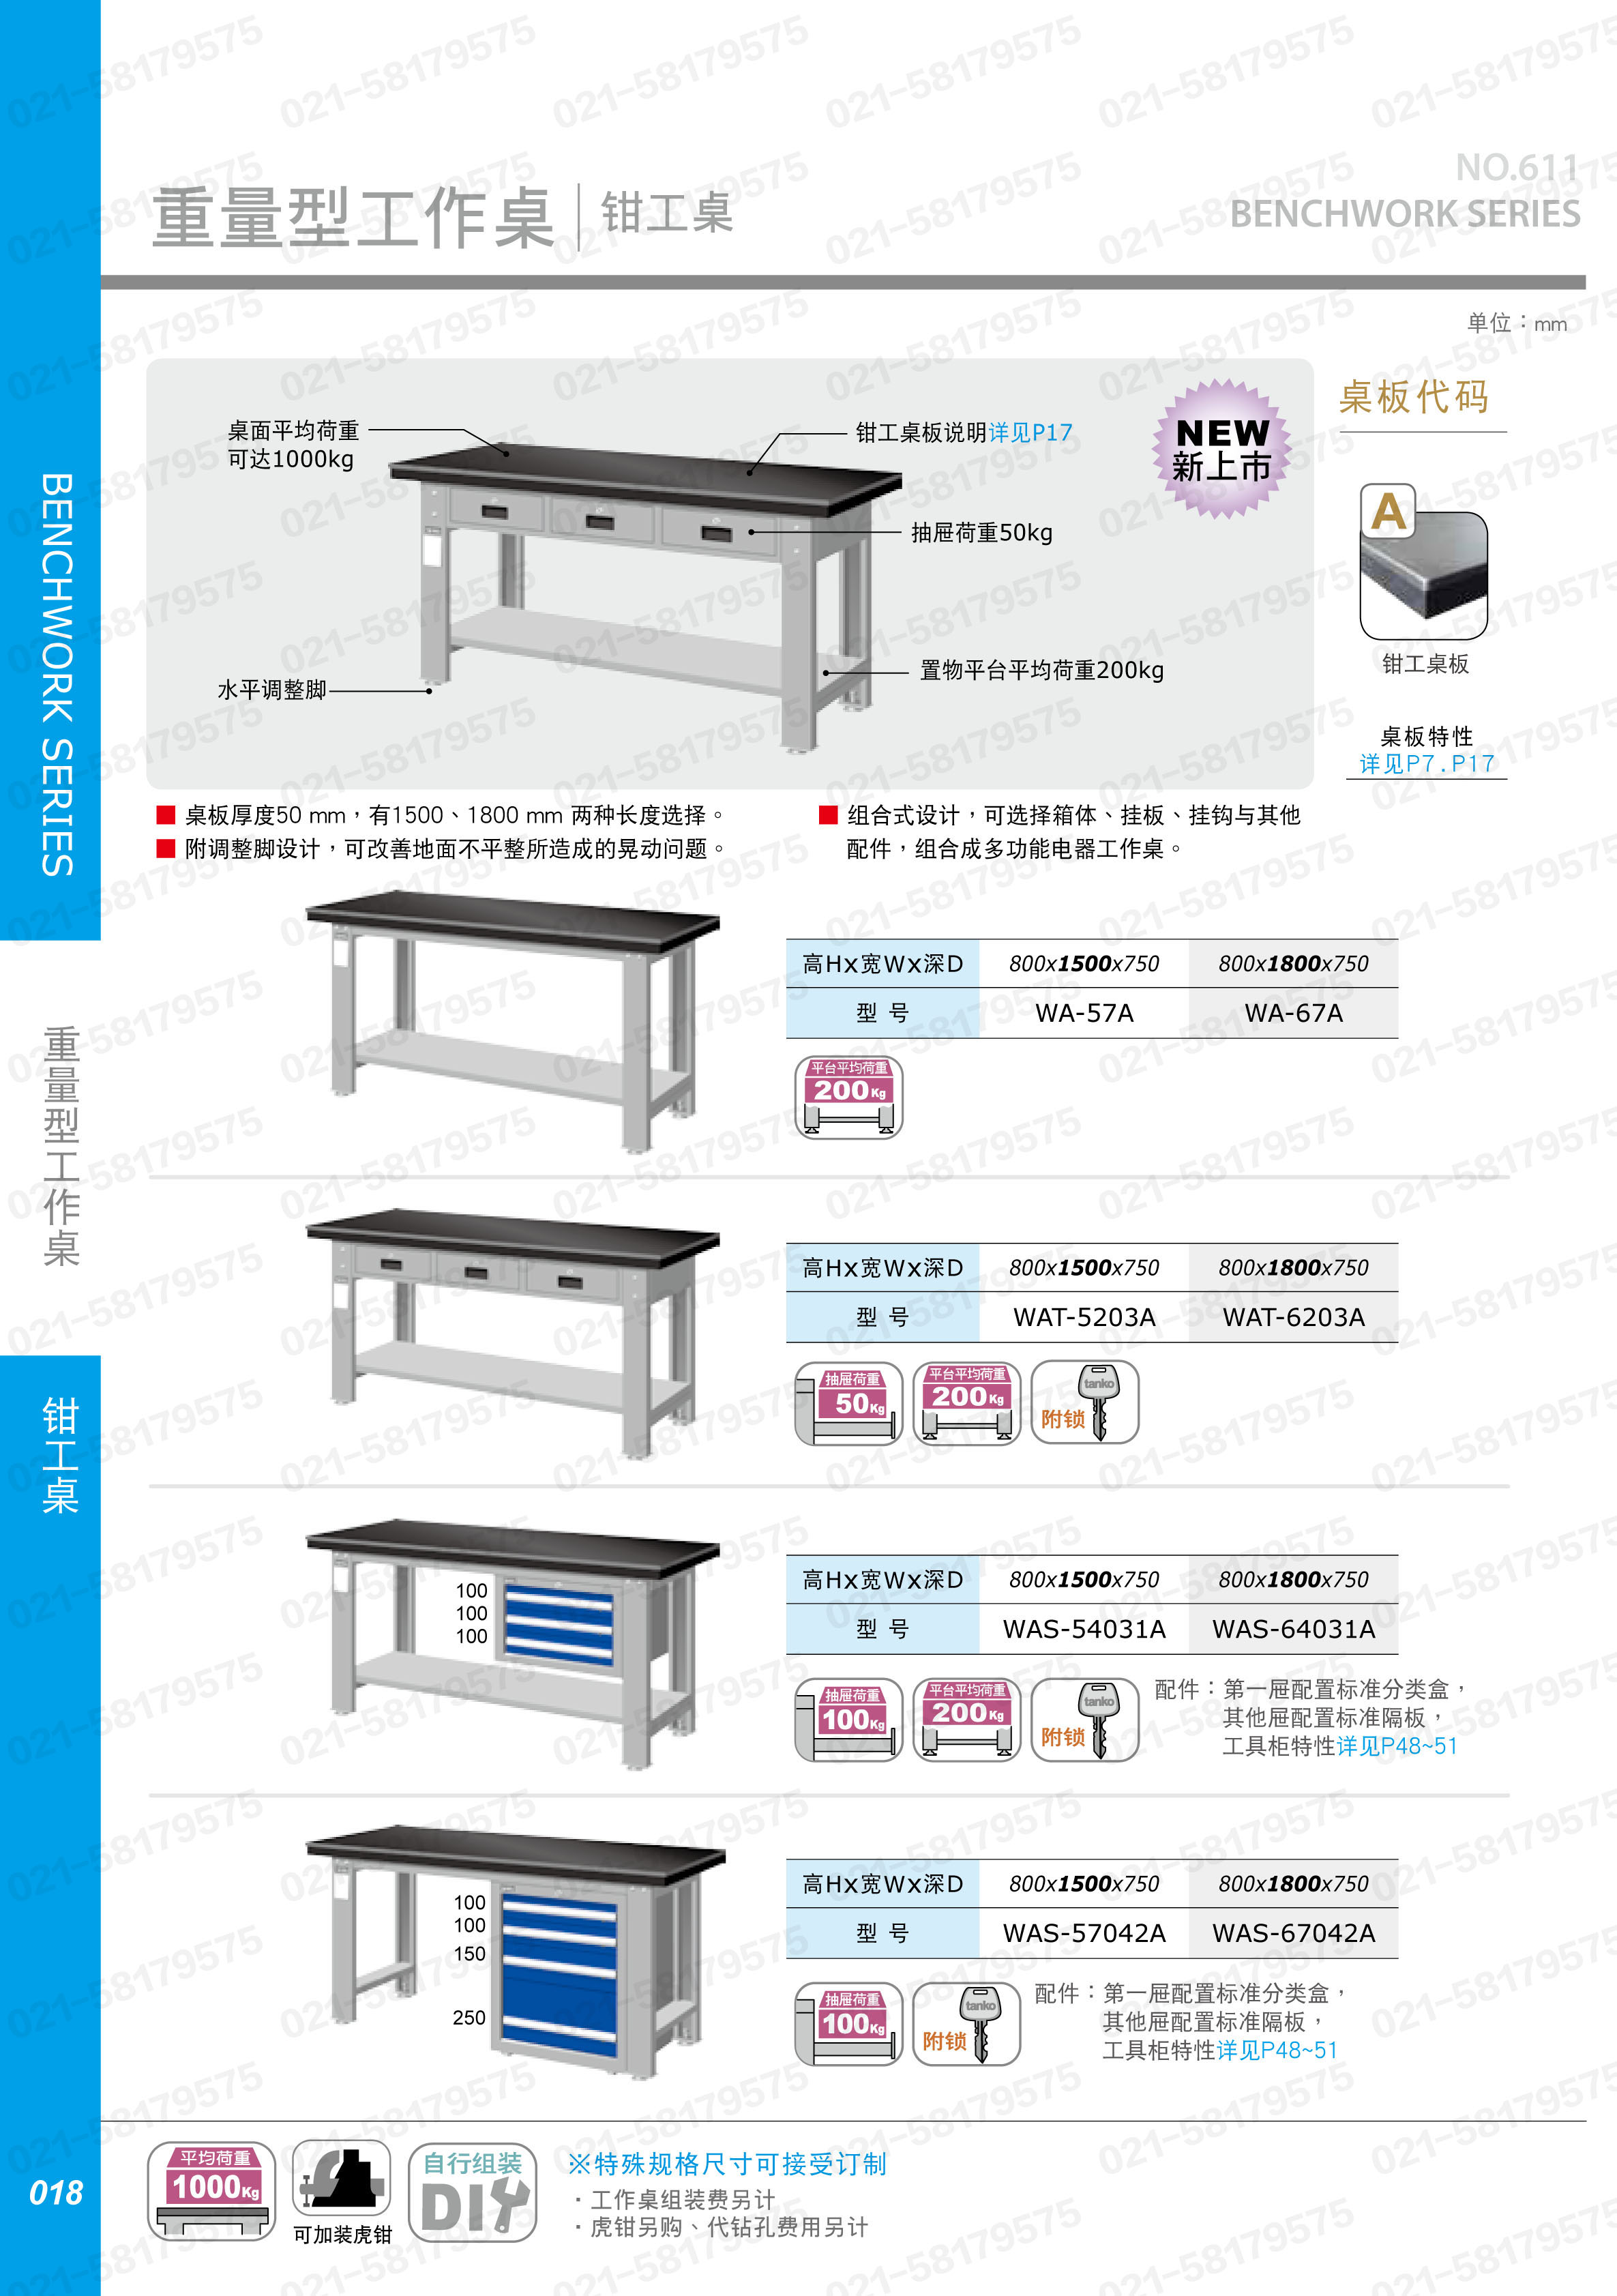 重型工作桌1800×750×800mm 钳工桌板 带四抽边柜,WAS-67042A,5D2927